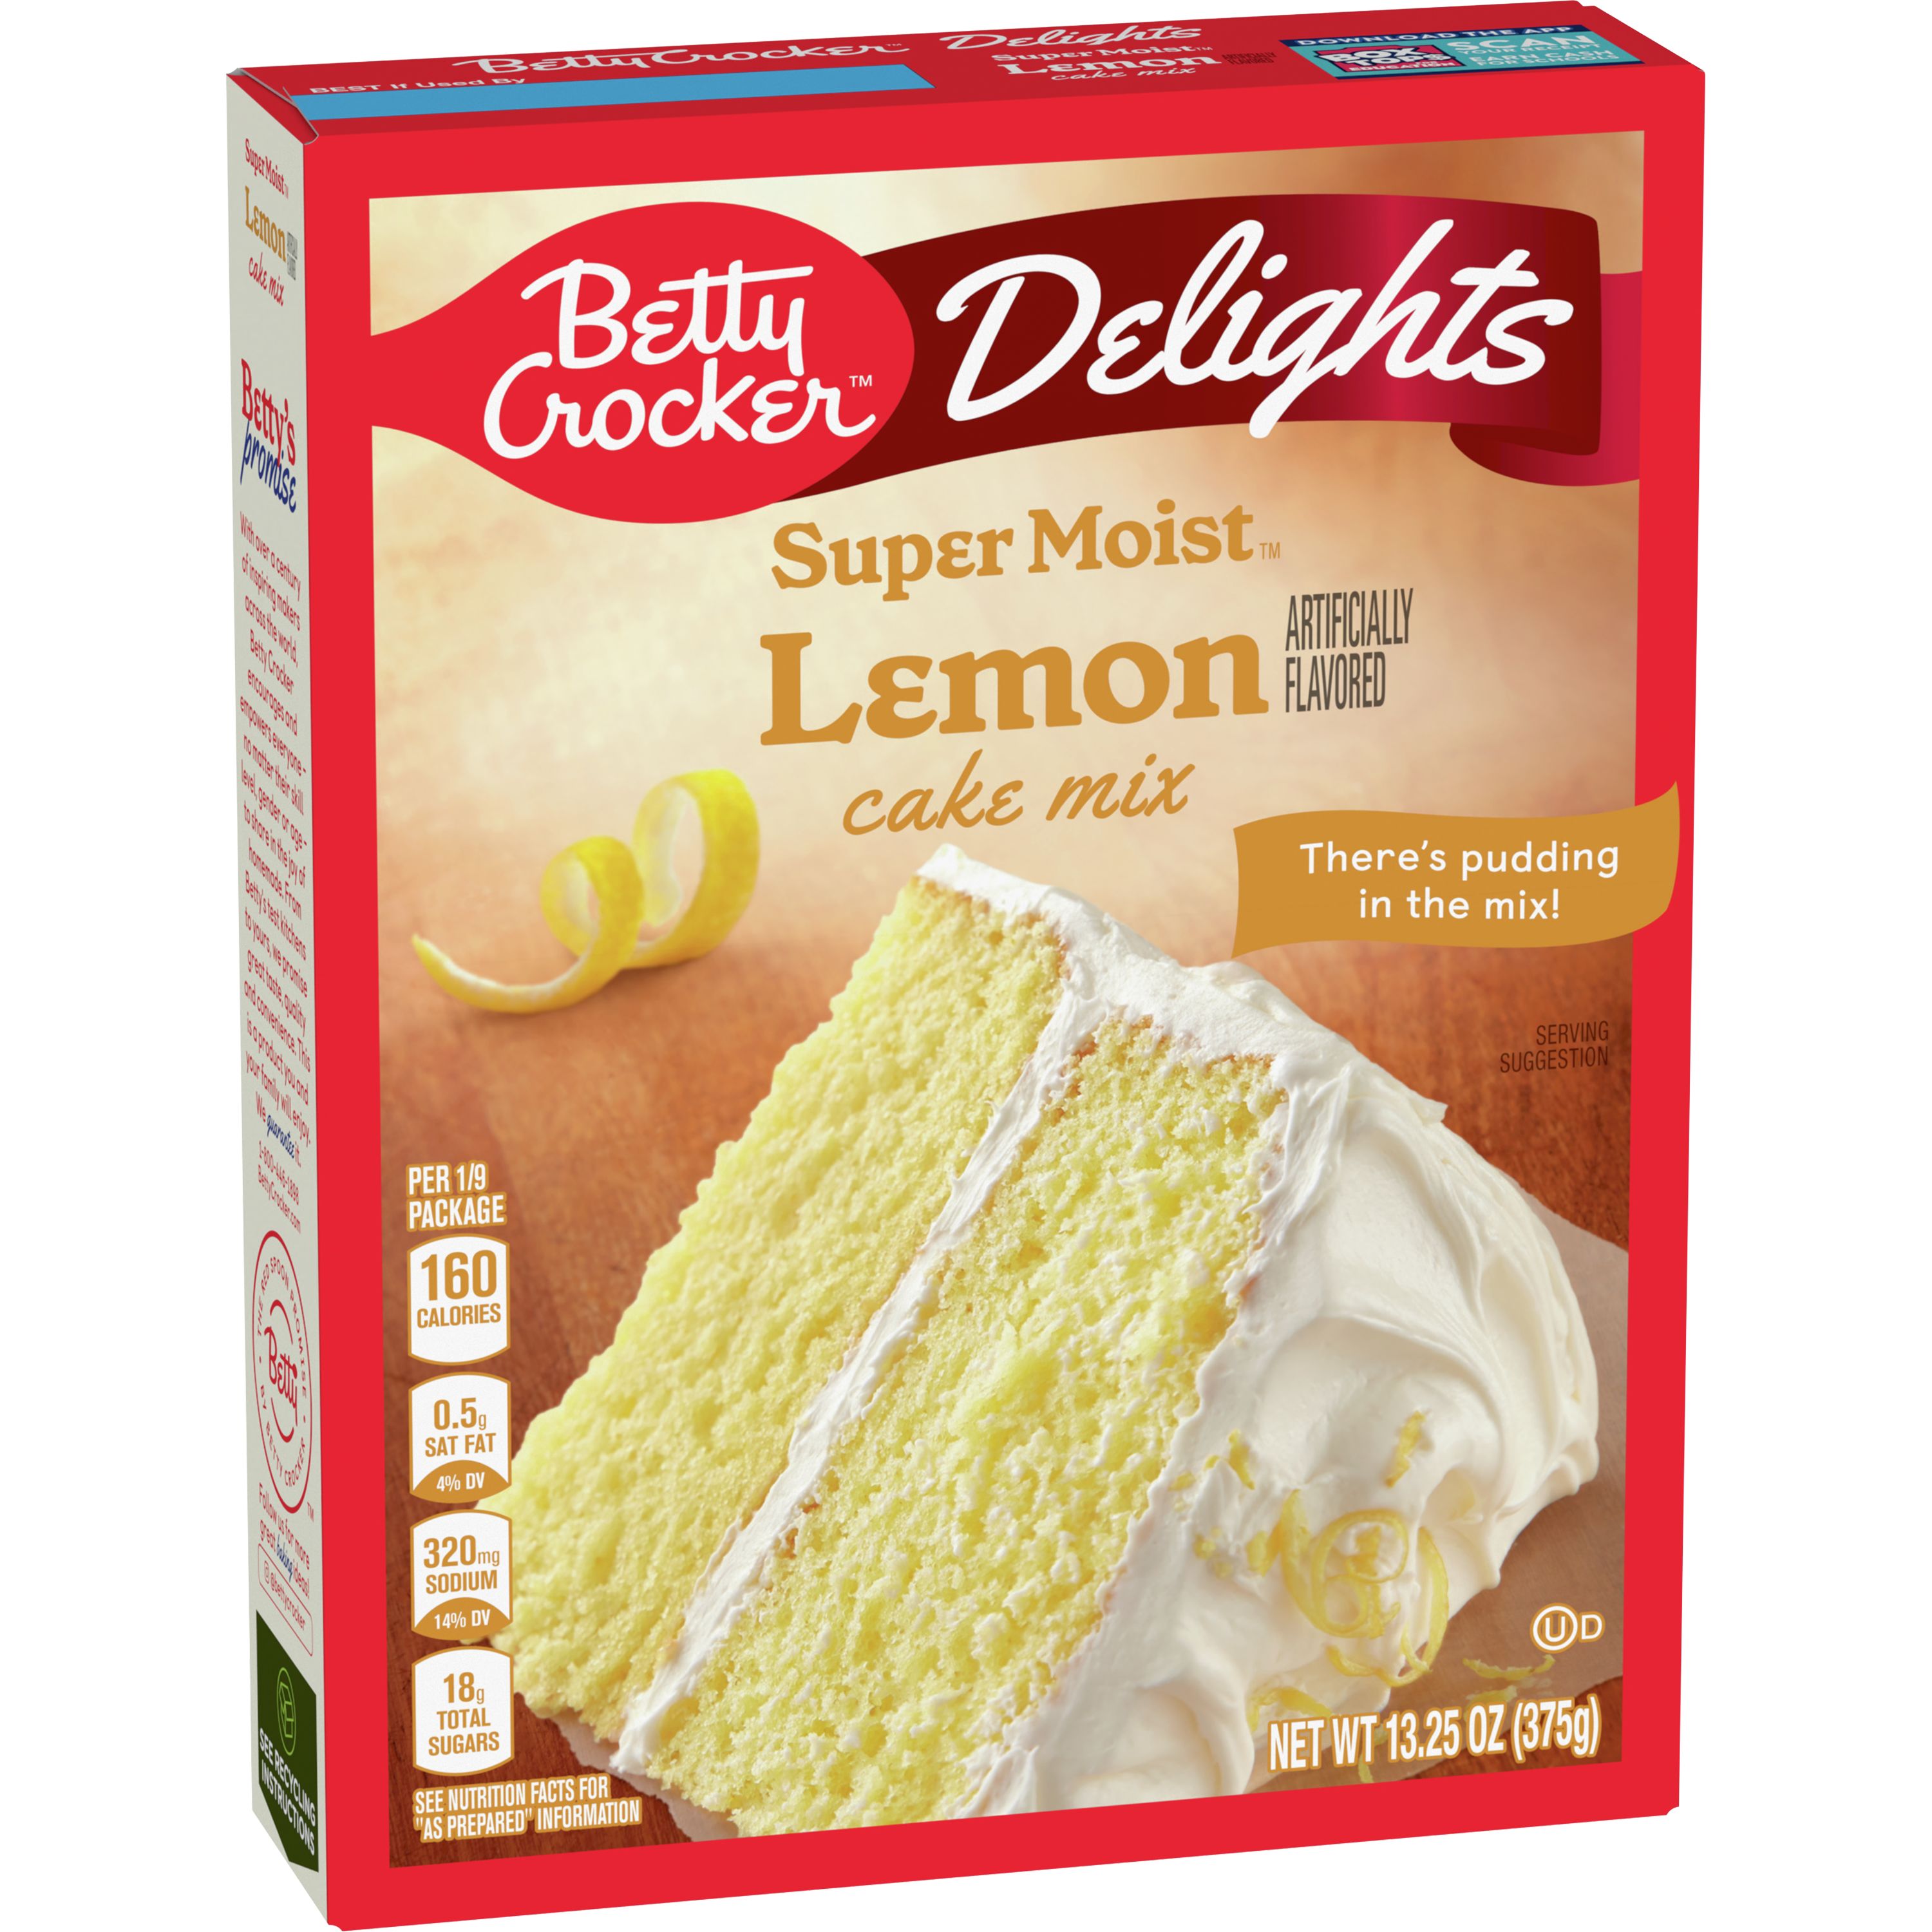 Better Boxed Vegan Cake – Big Box Vegan